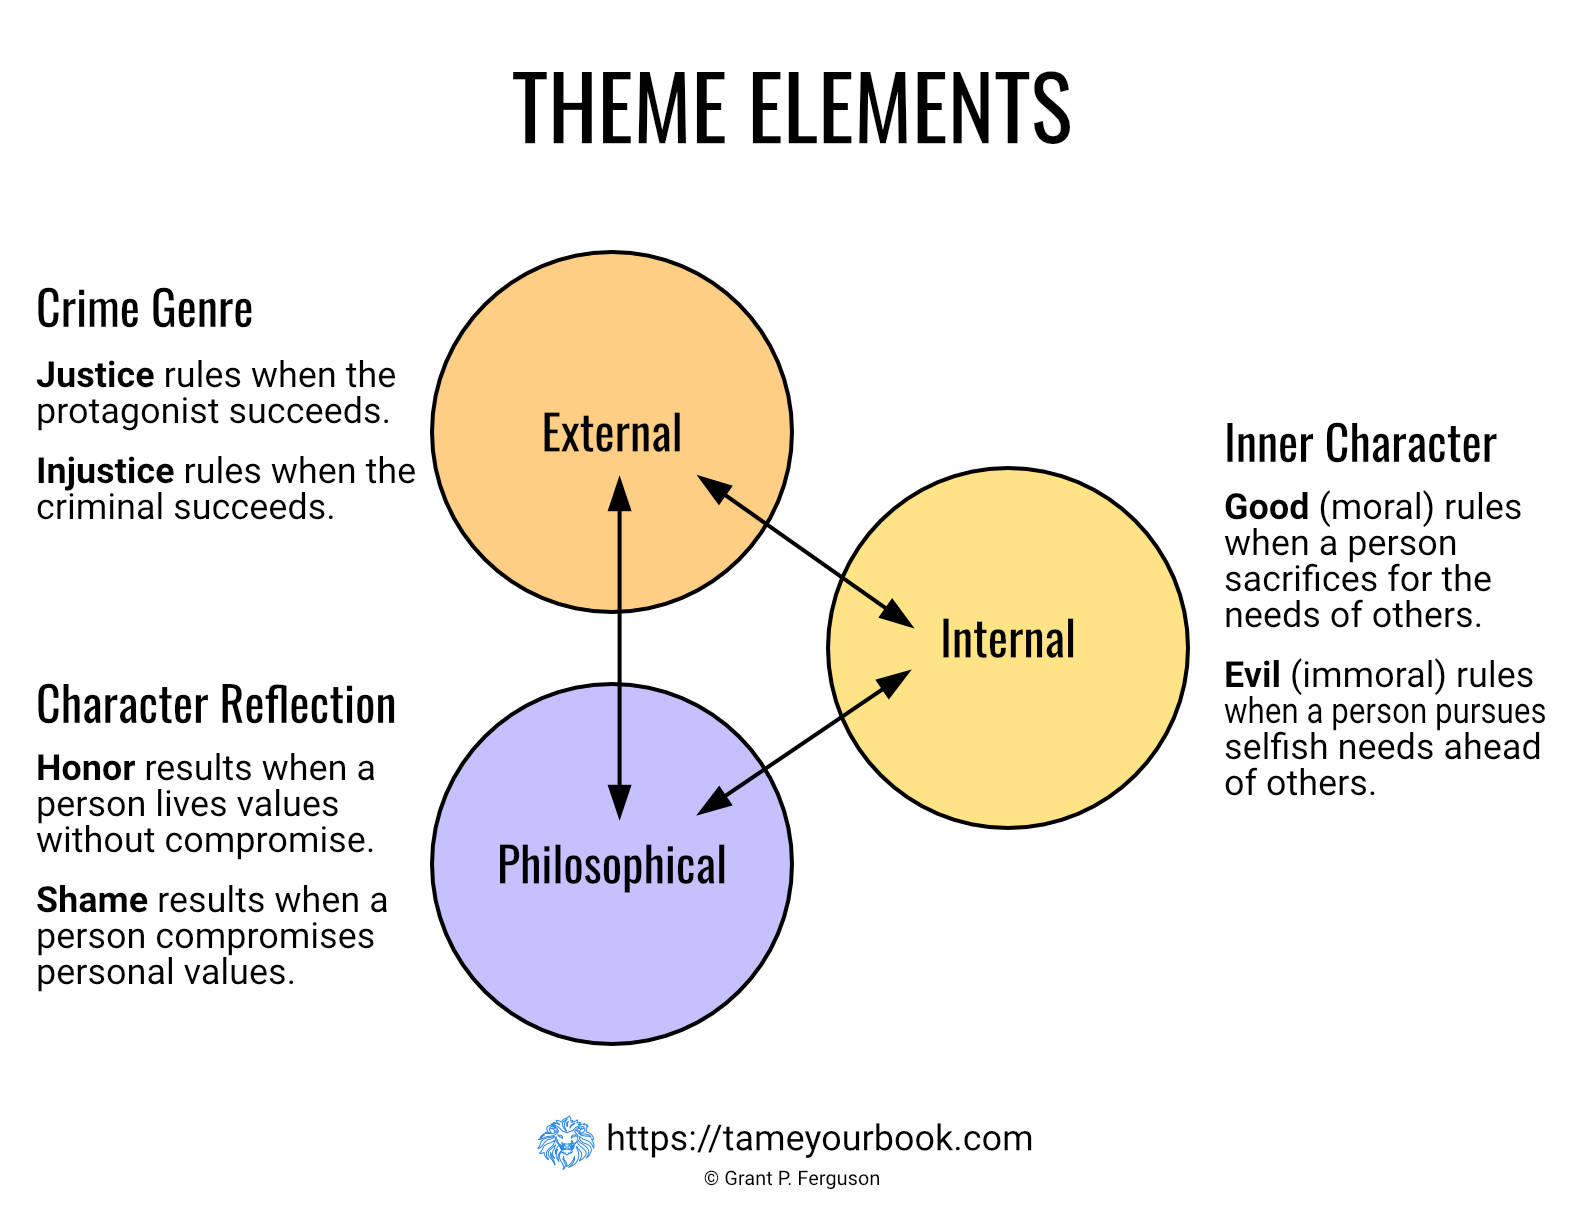 Theme Elements